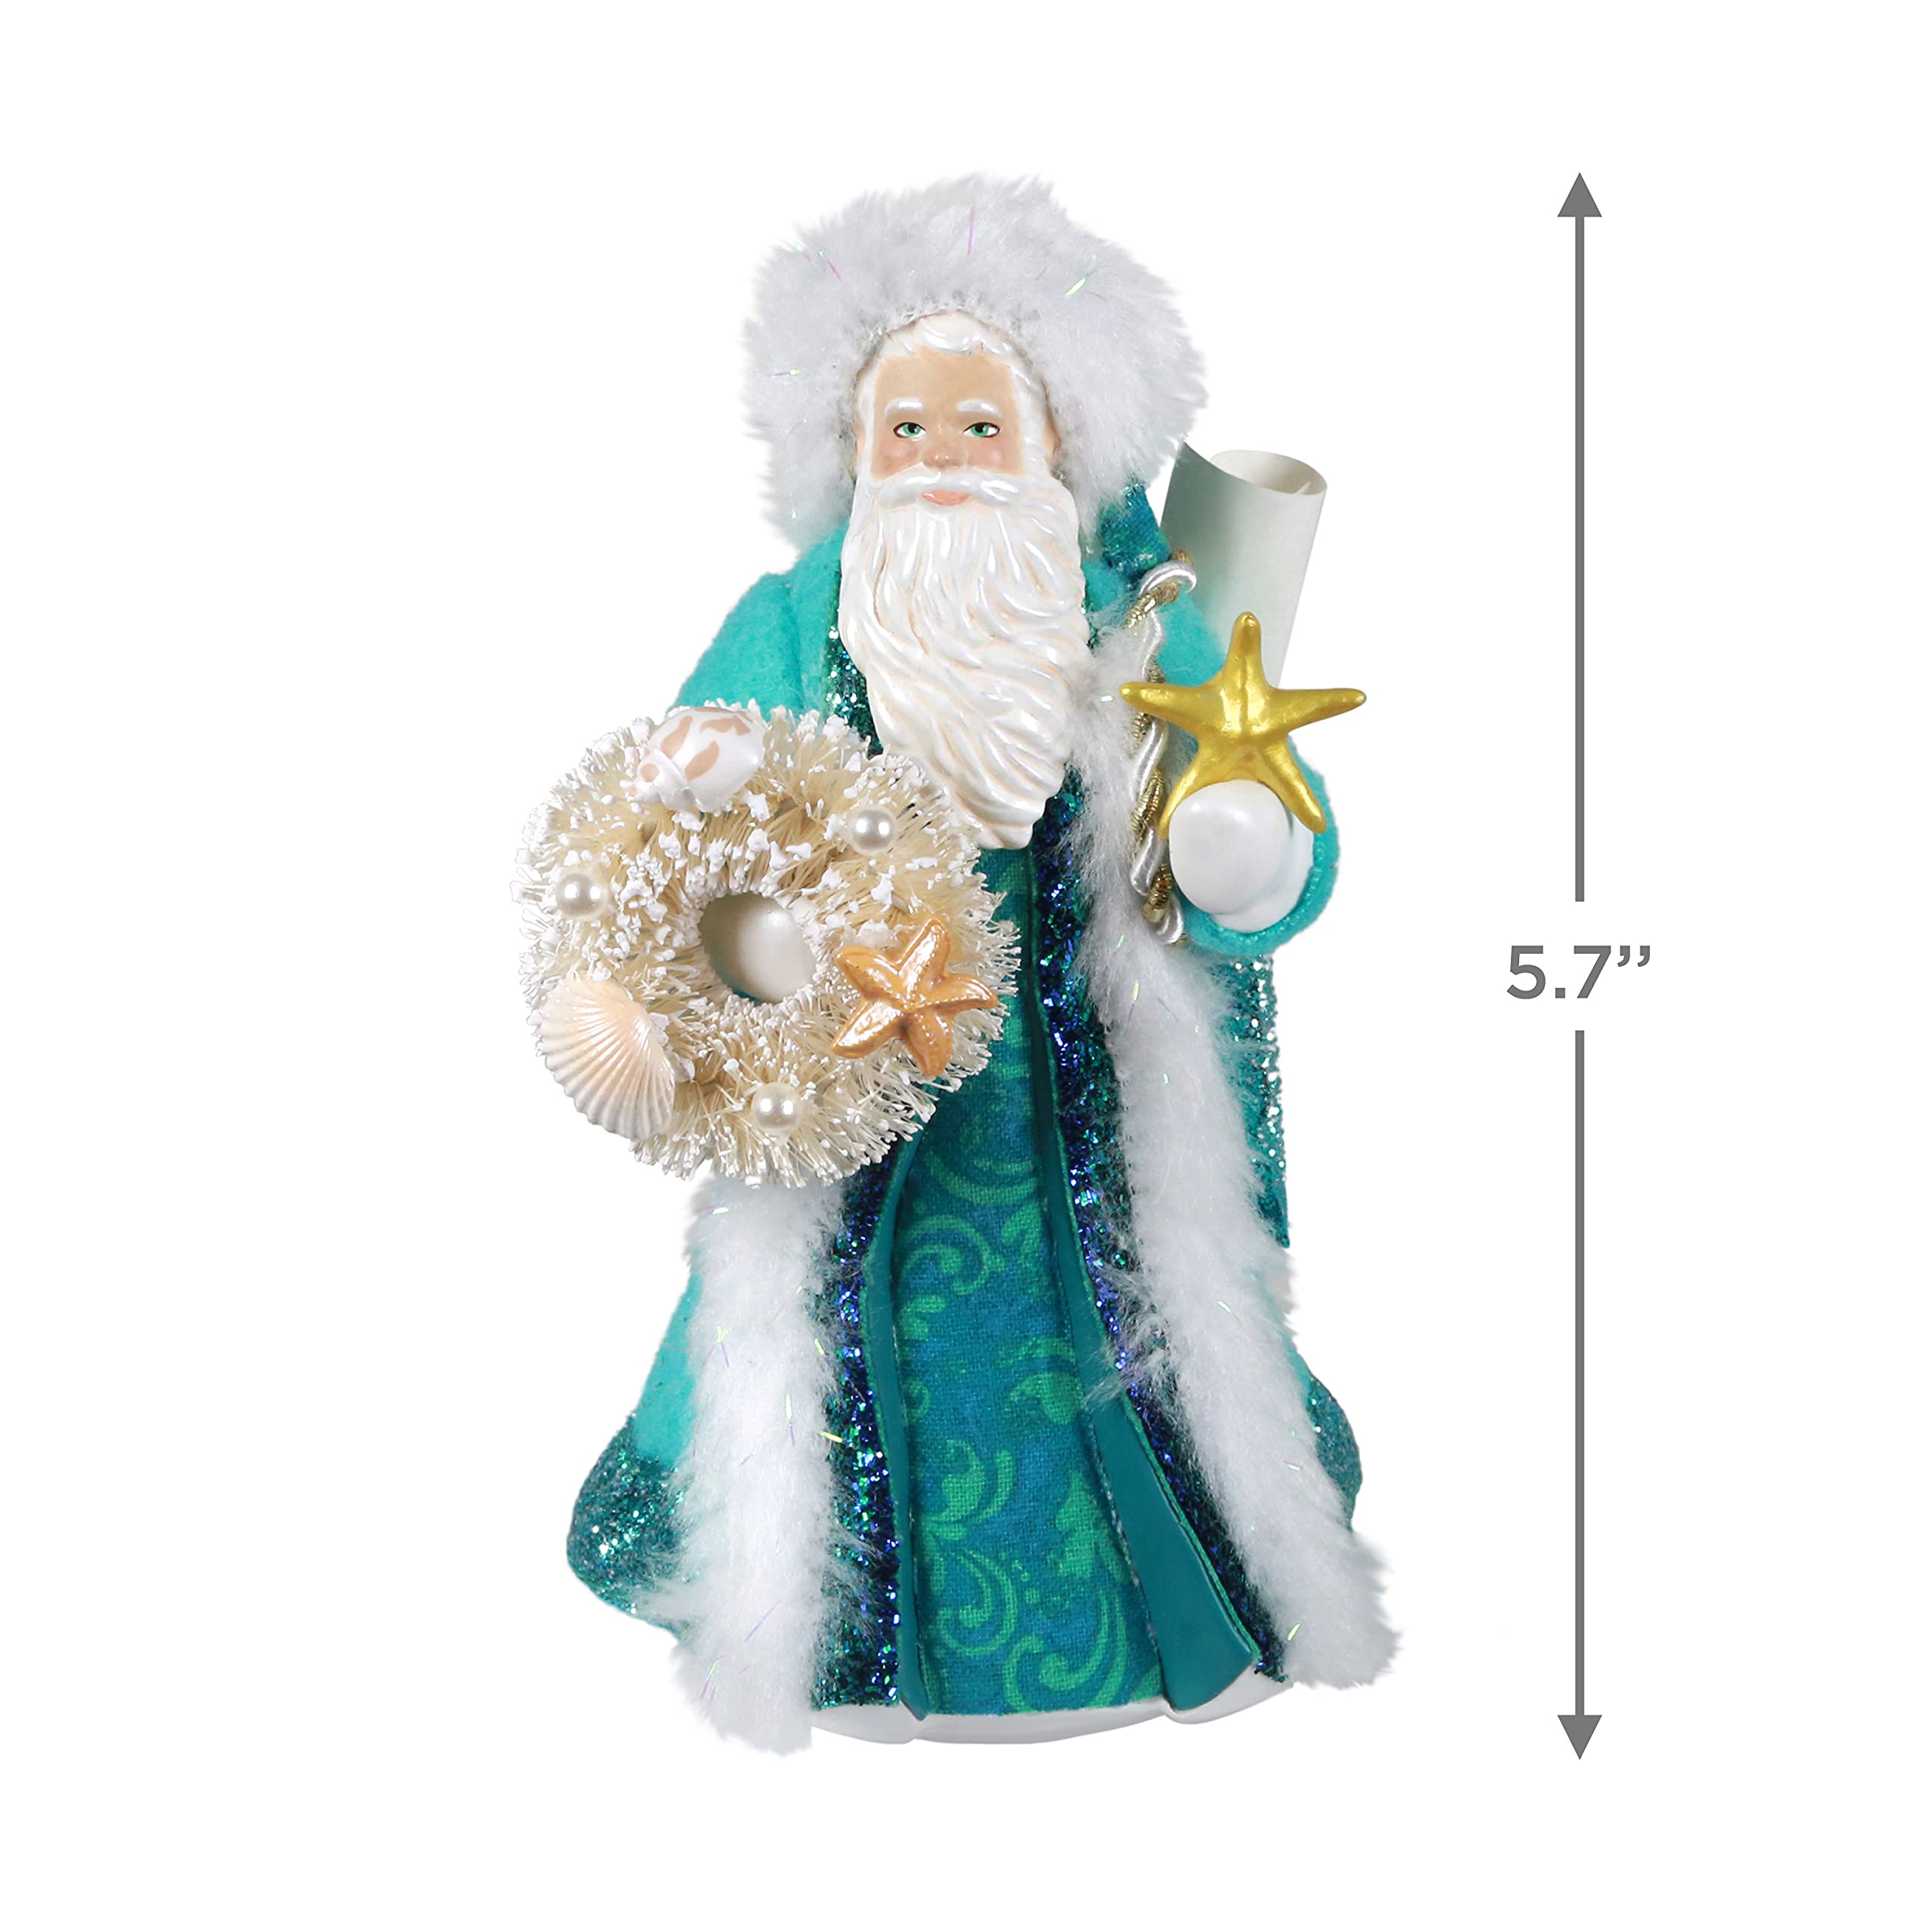 Father Christmas Keepsake Christmas Ornament 2021